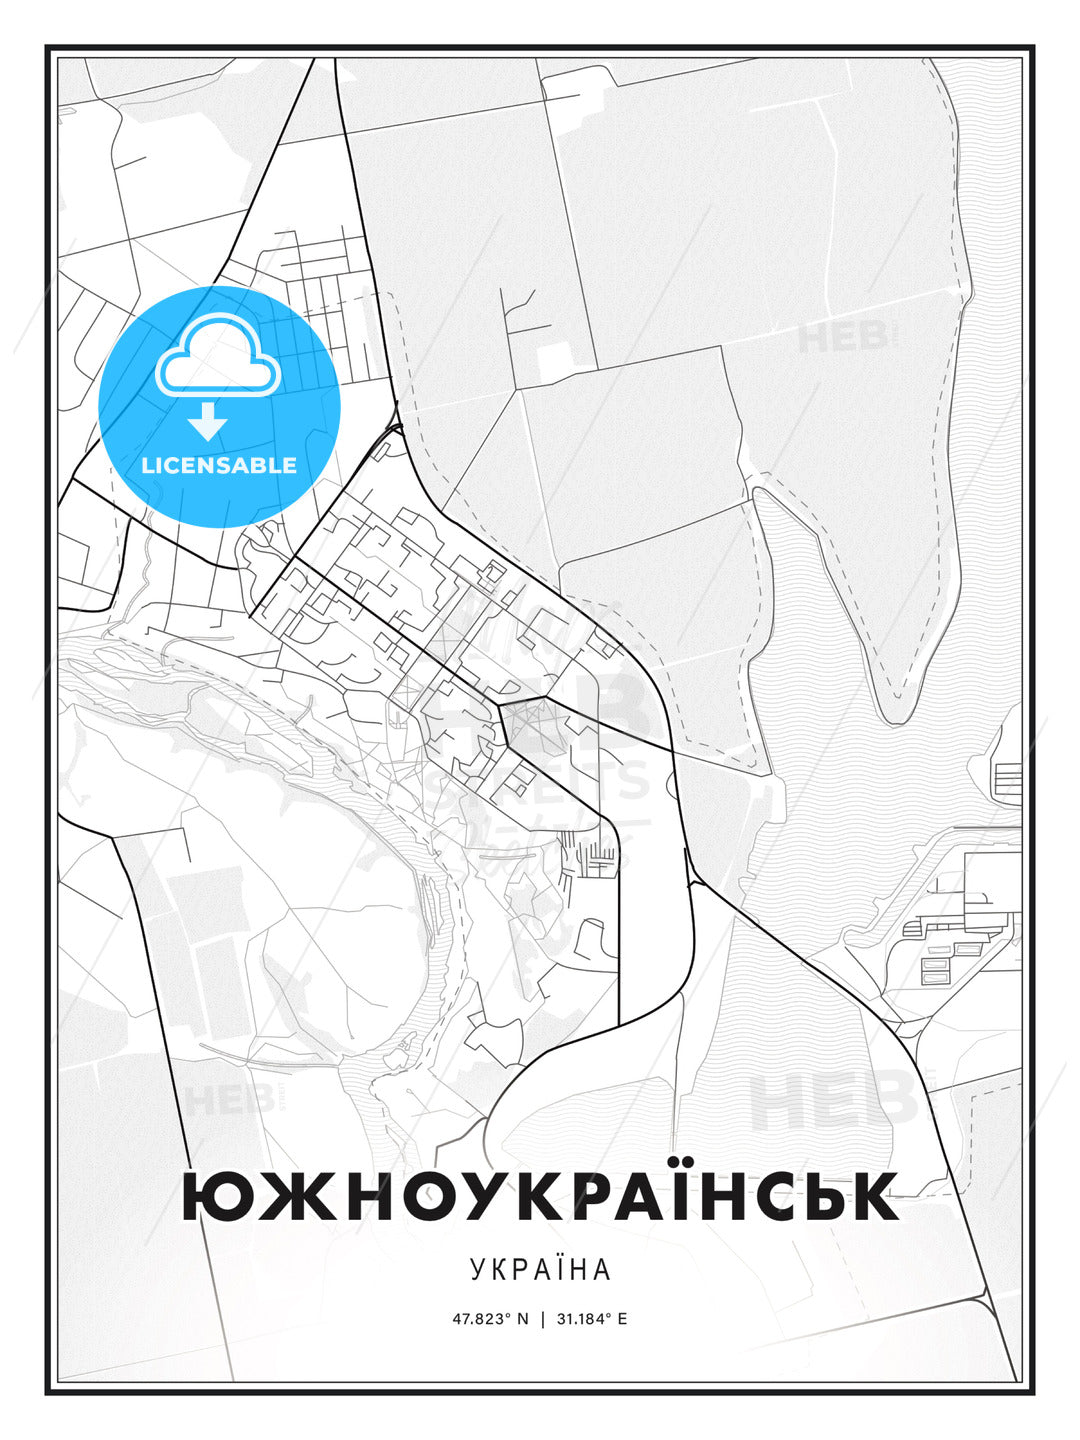 ЮЖНОУКРАЇНСЬК / Yuzhnoukrainsk, Ukraine, Modern Print Template in Various Formats - HEBSTREITS Sketches